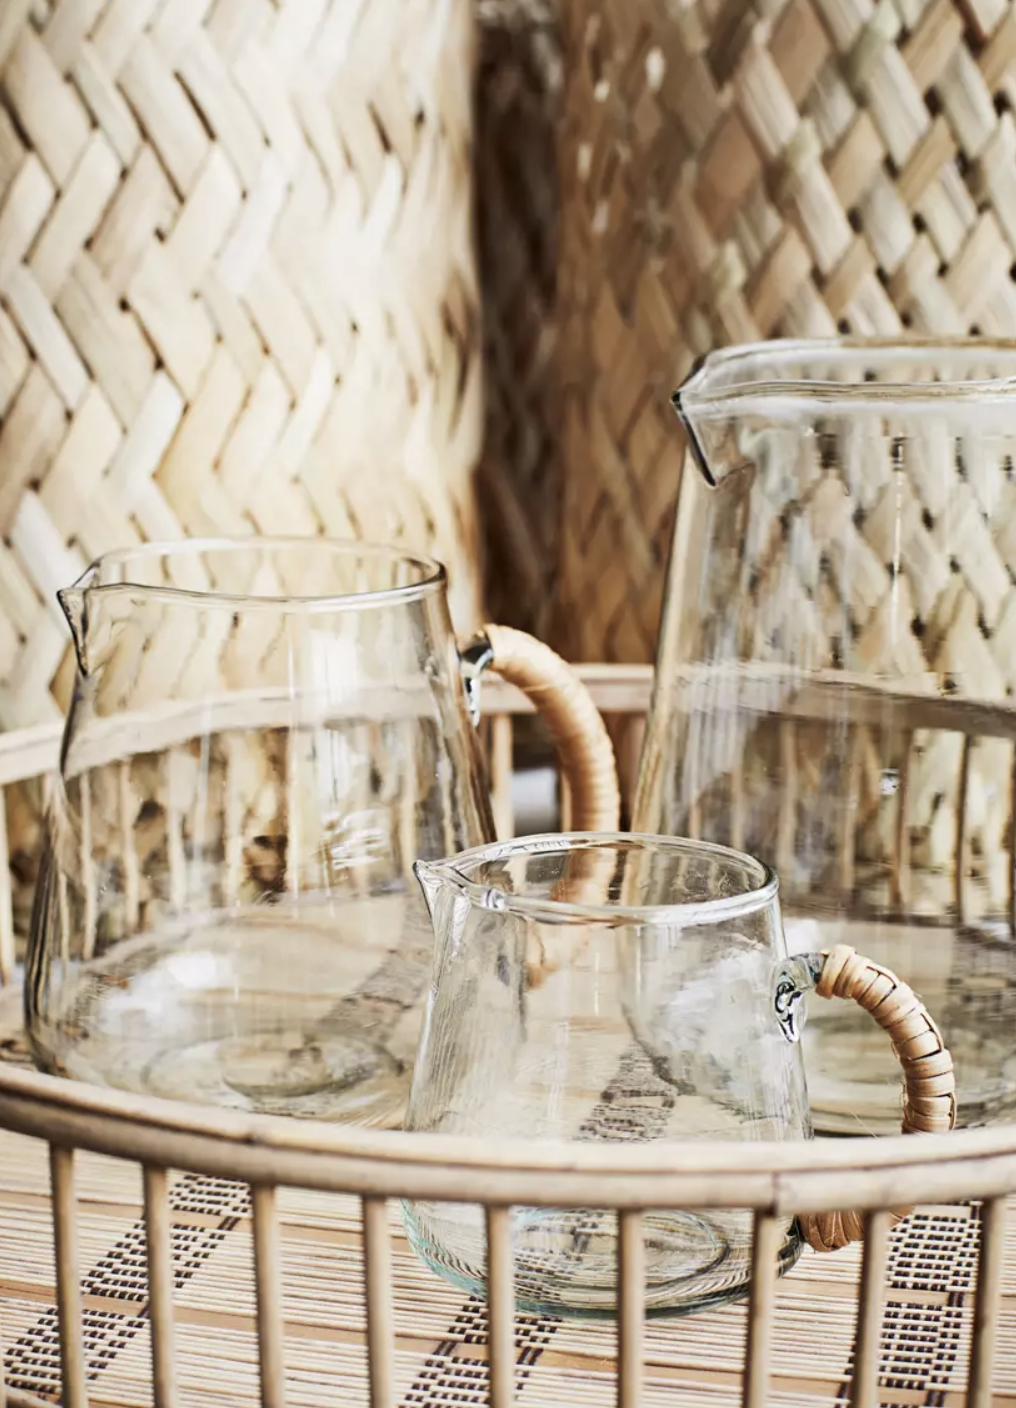 Glass jug w/bamboo 2 L